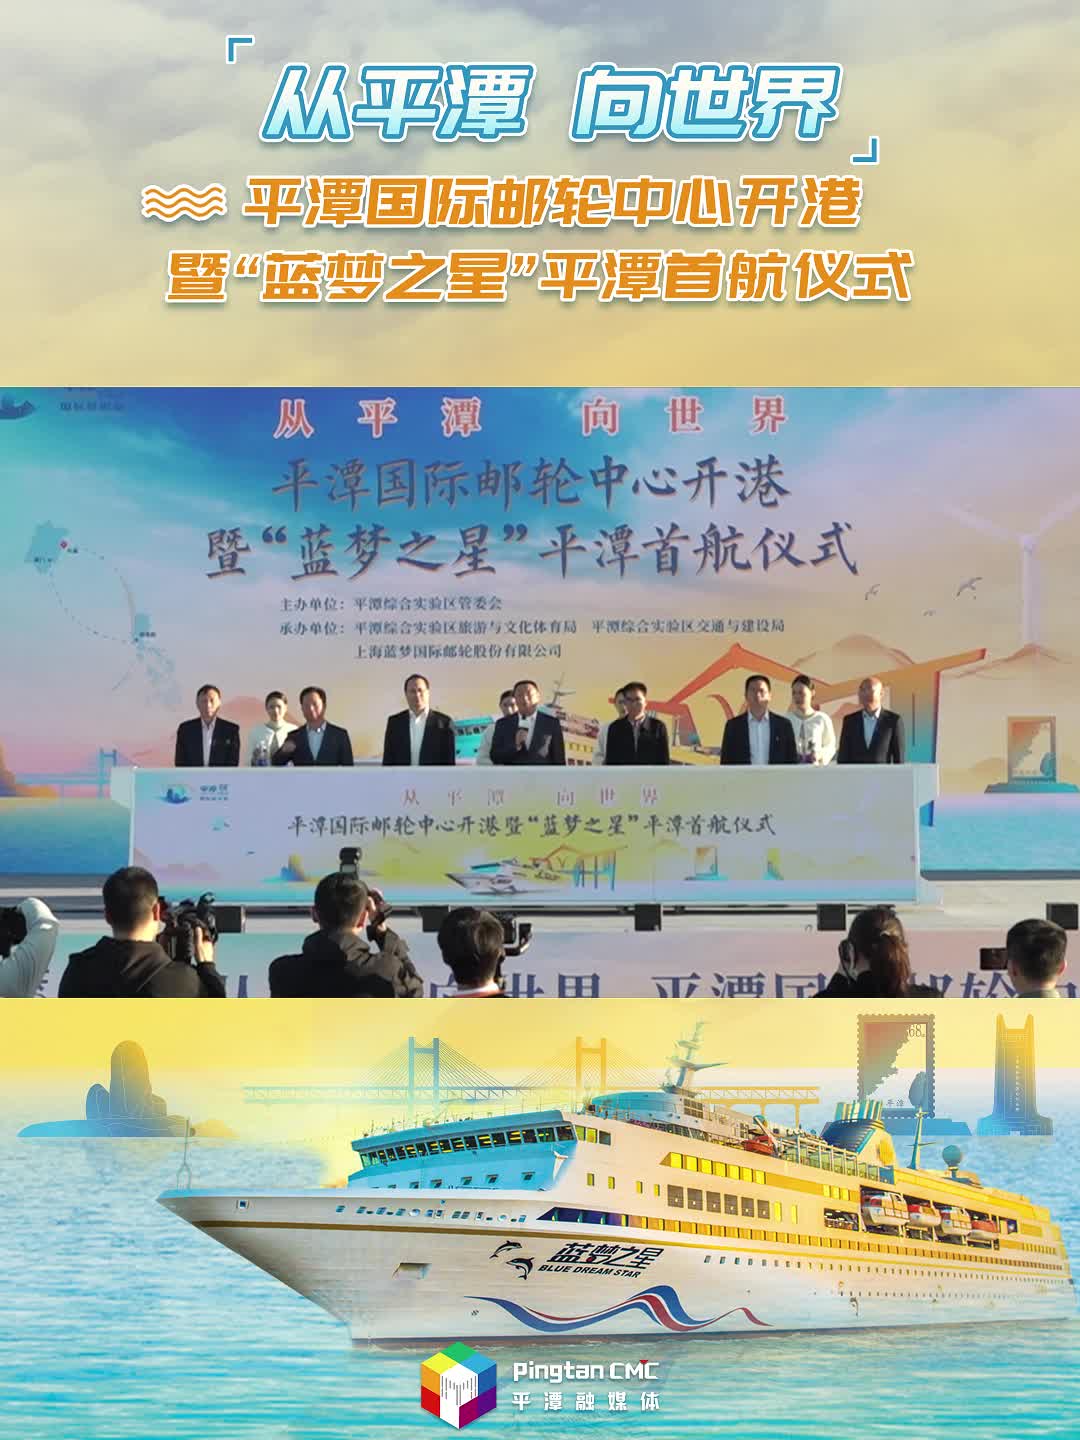 平潭首条国际邮轮航线正式启航